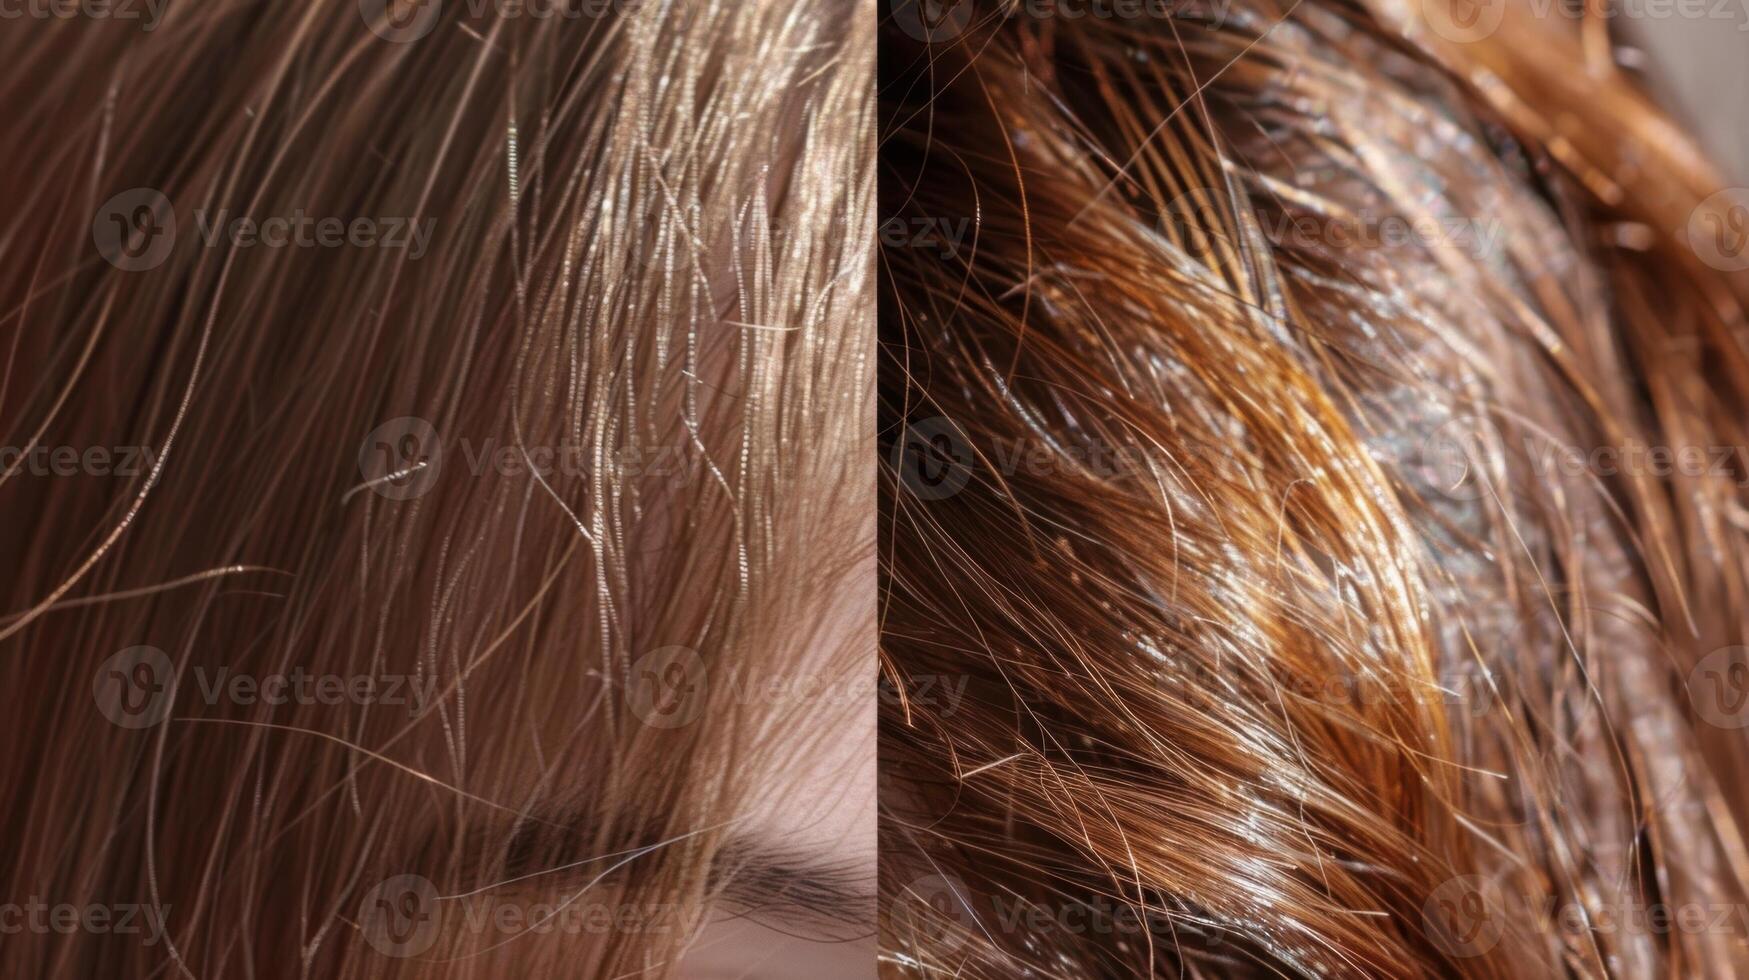 un comparación de pelo salud con el primero foto demostración seco y frágil pelo y el segundo foto demostración brillante hidratado pelo después regularmente utilizando un sauna.